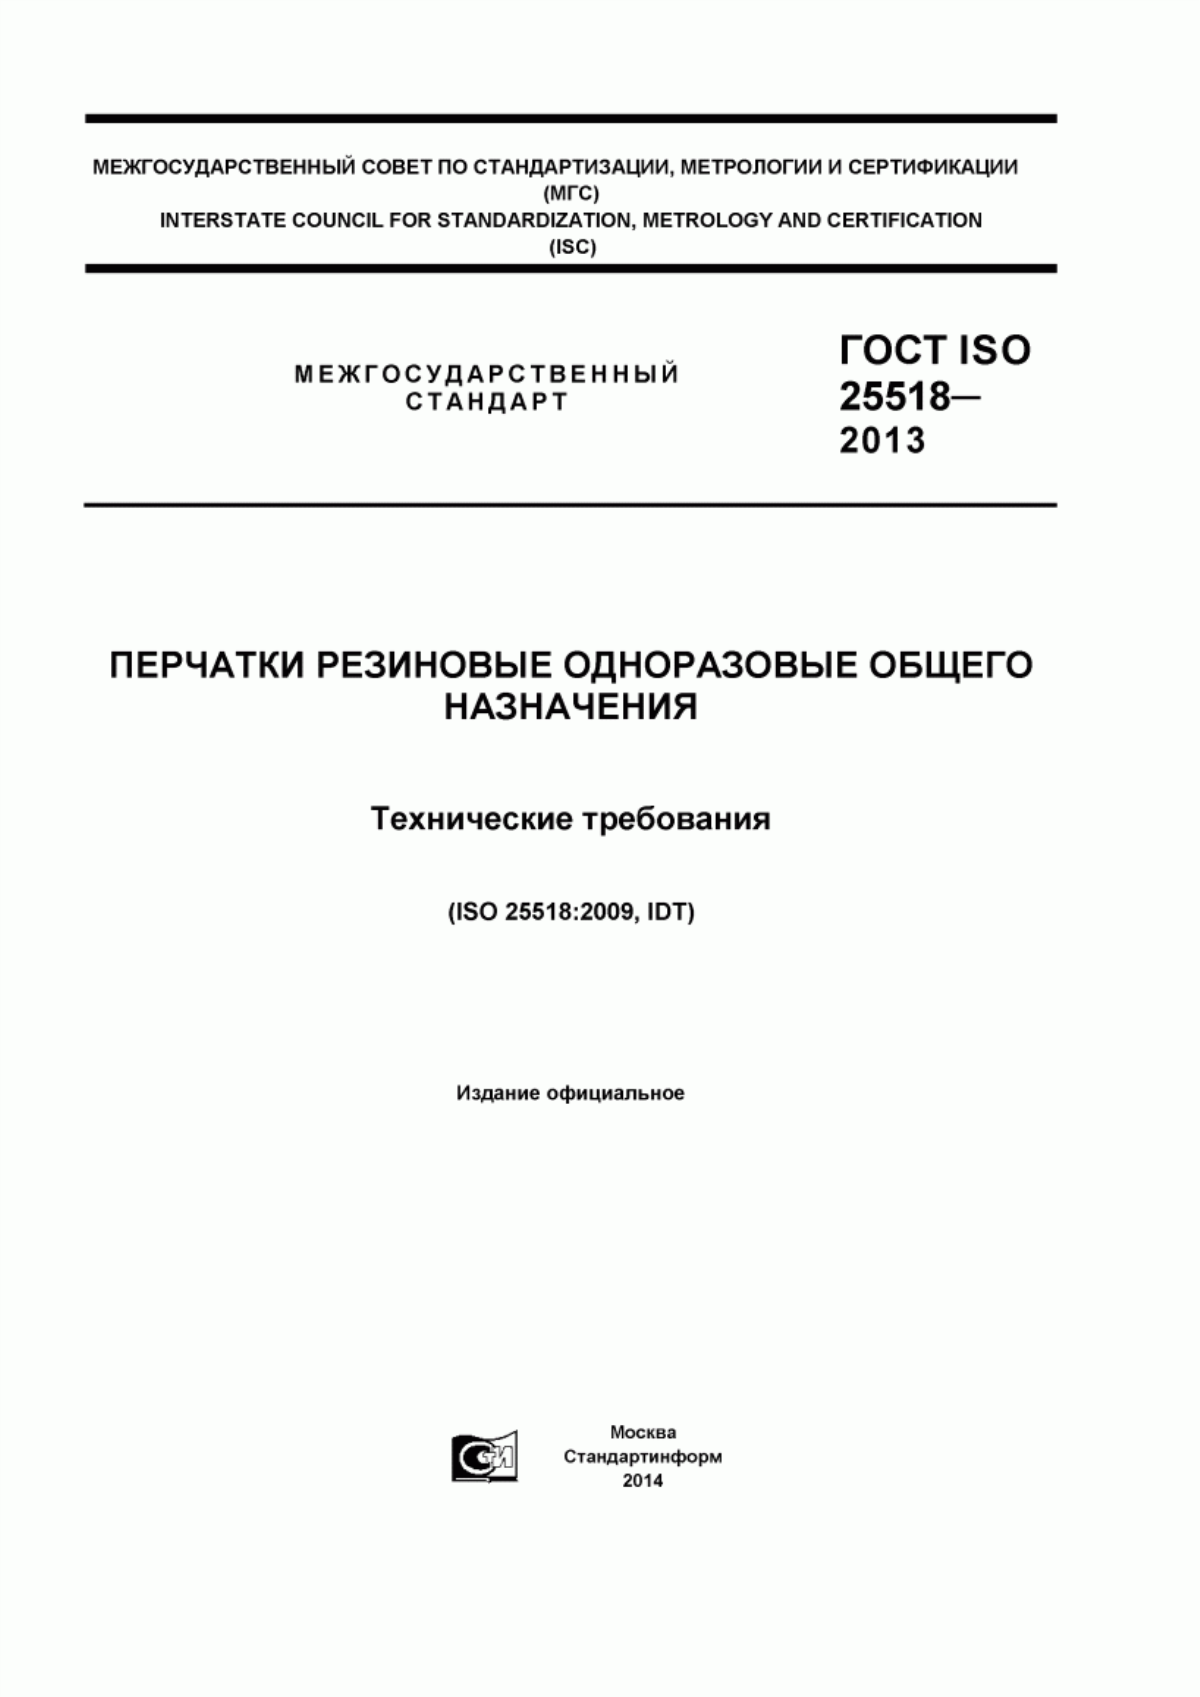 ГОСТ ISO 25518-2013 Перчатки резиновые одноразовые общего назначения. Технические требования